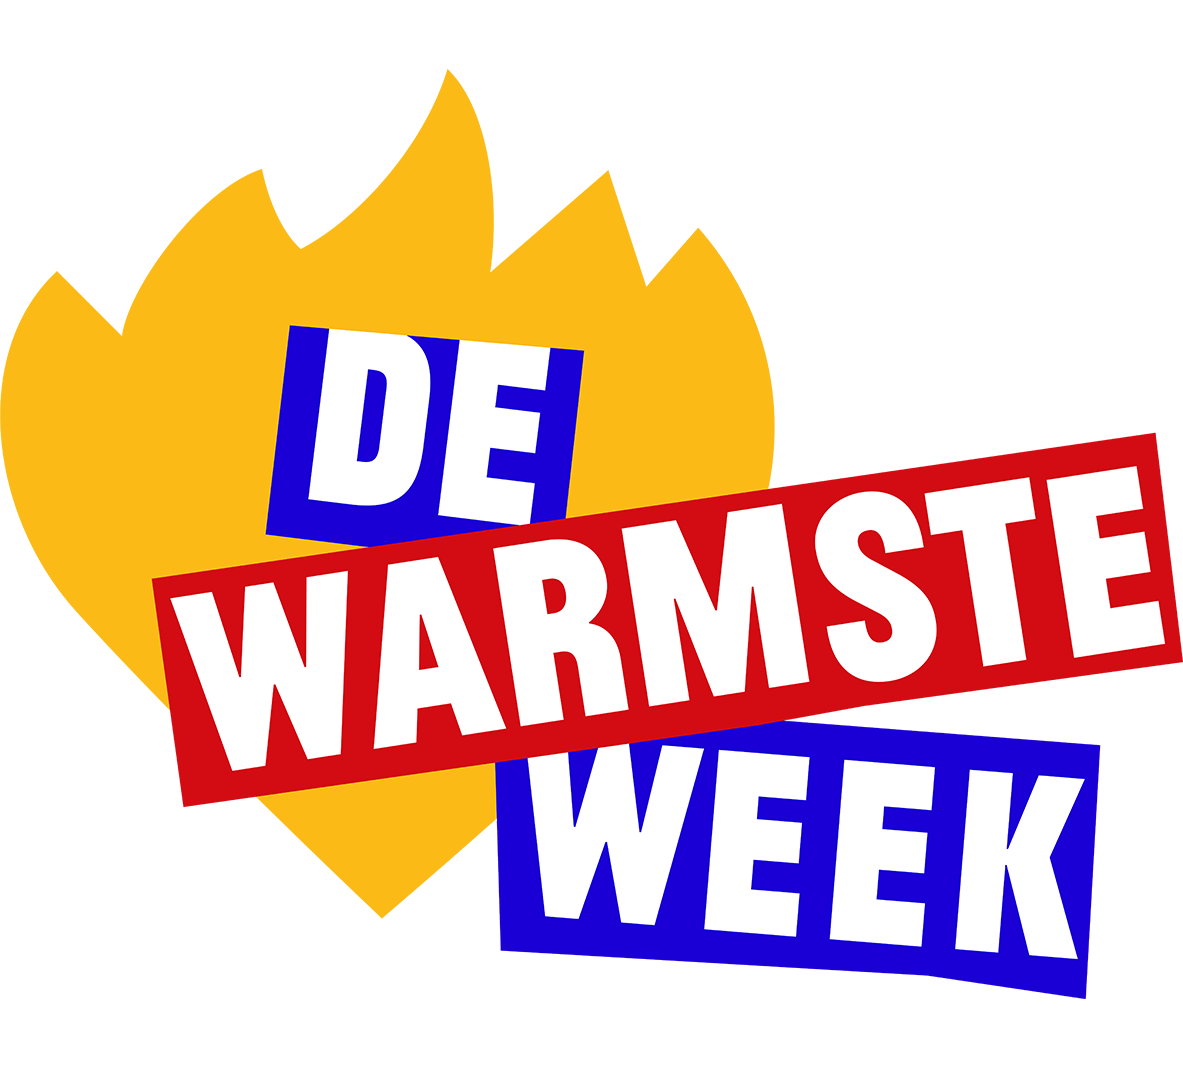 logo van de warmste week